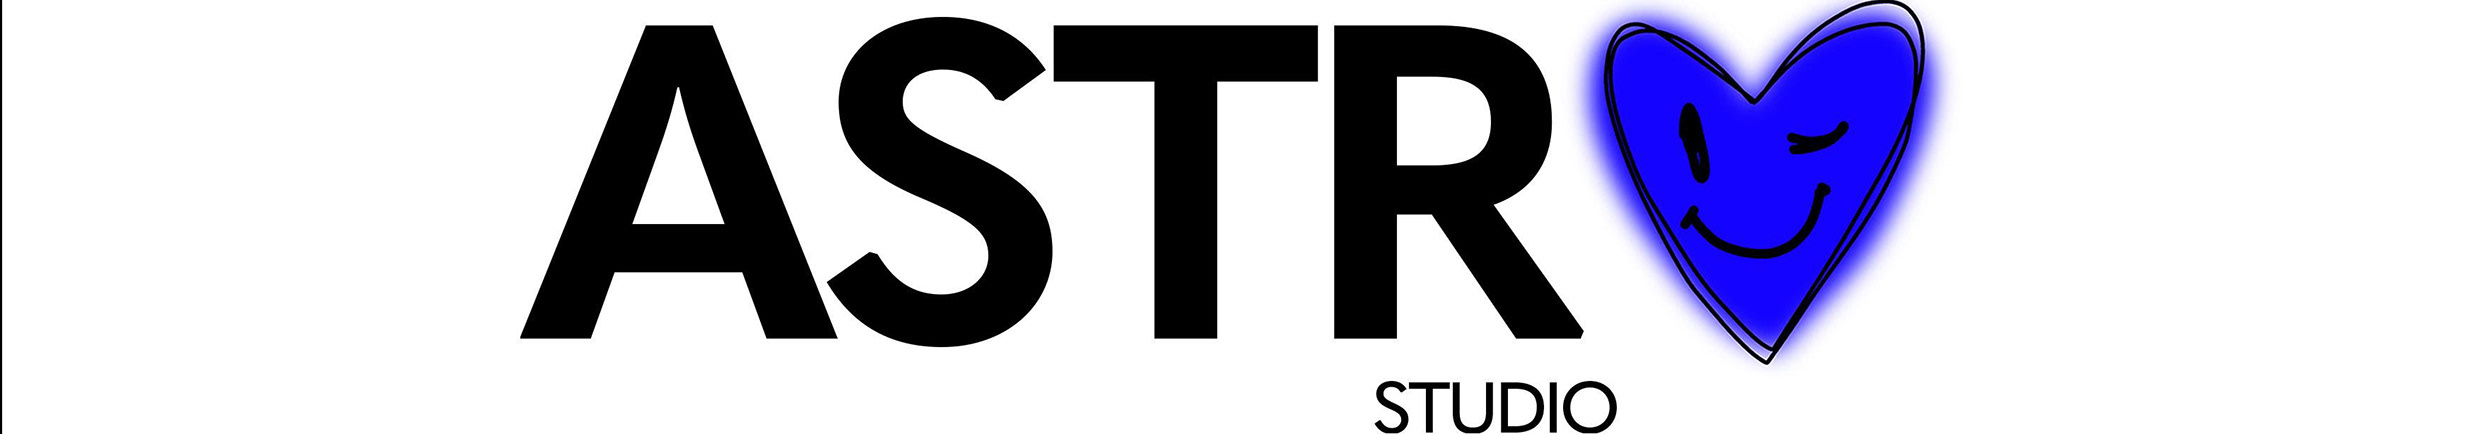 Astro Studio's profile banner